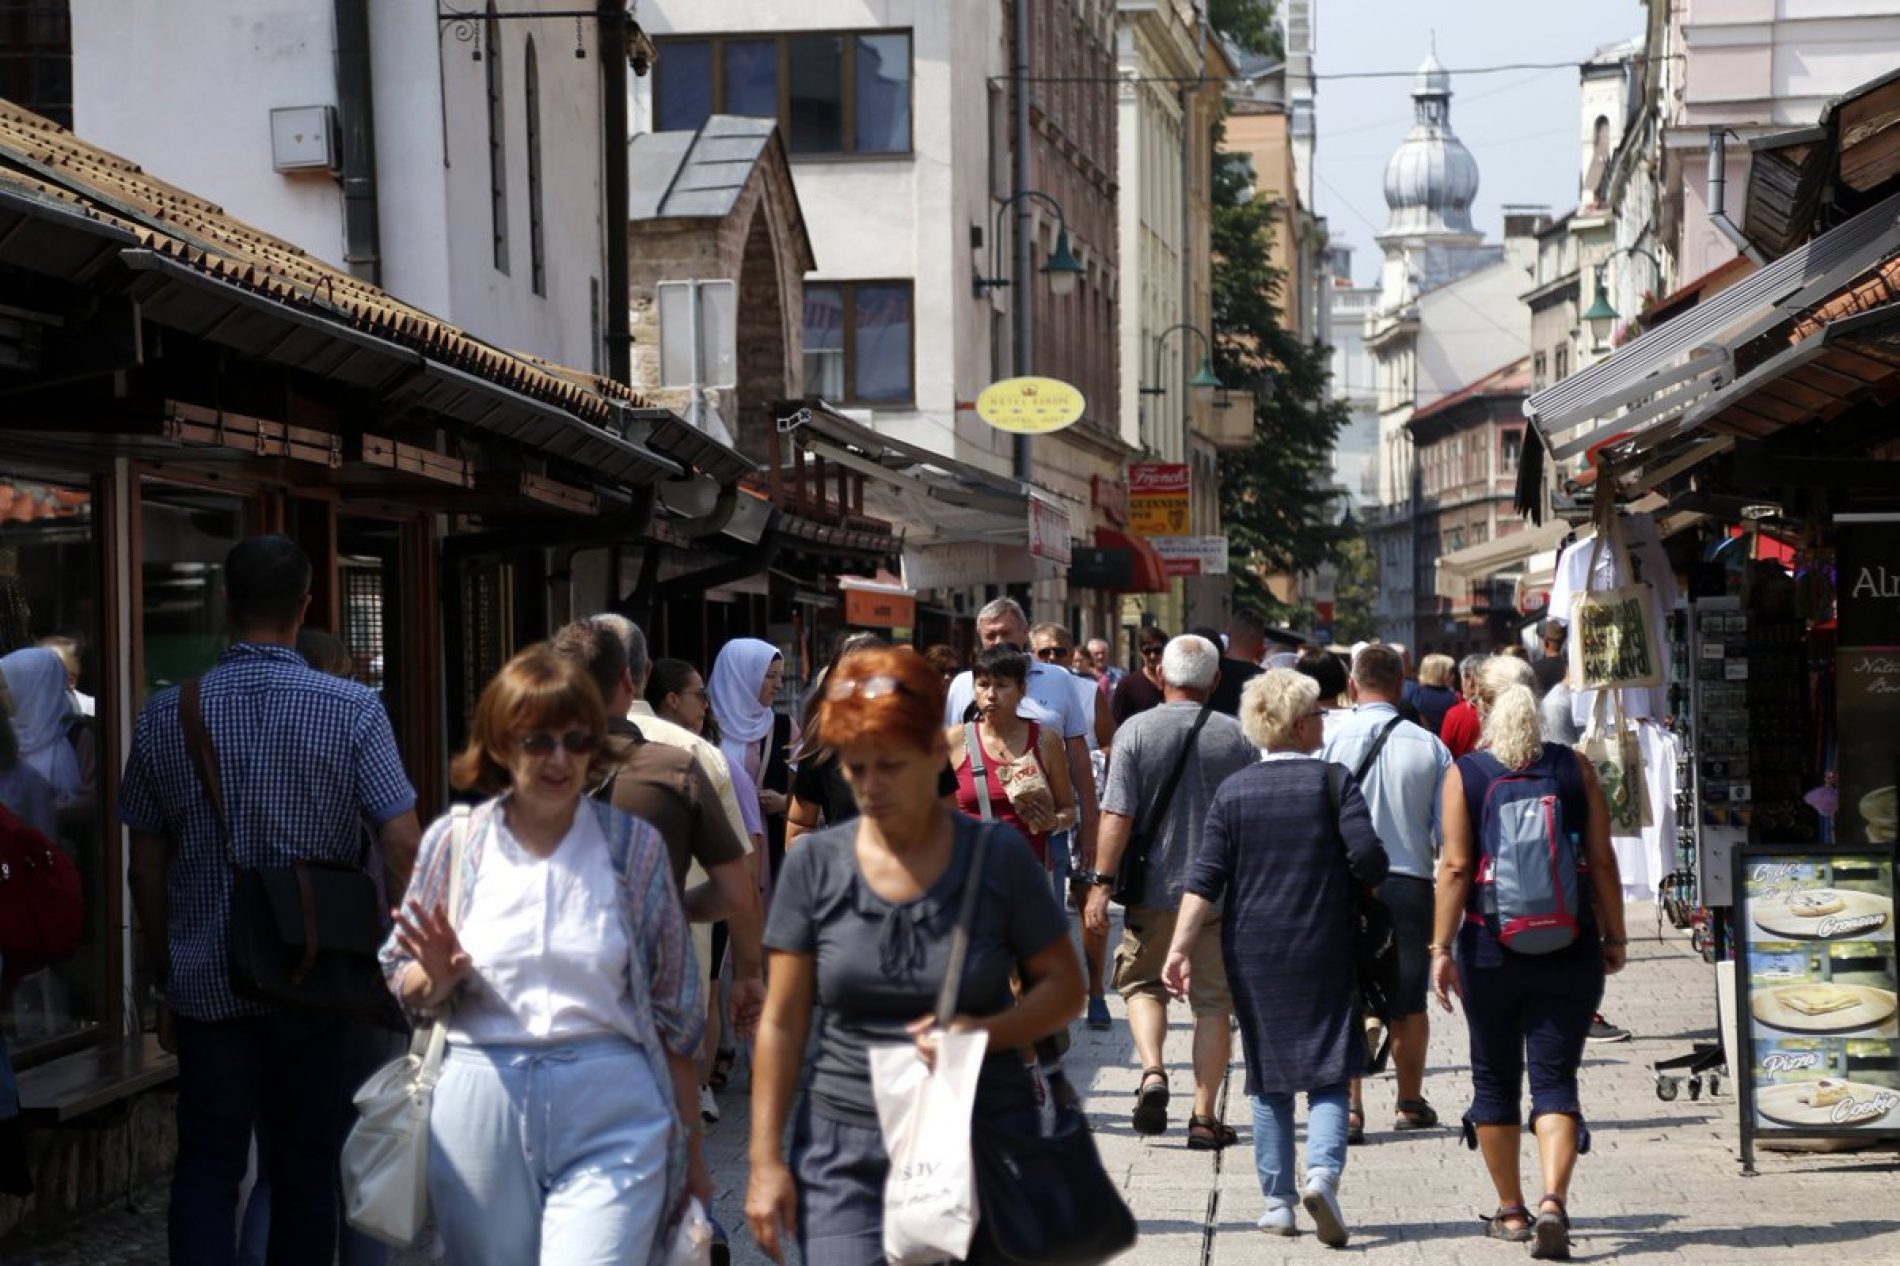 Sarajevom i SFF-om oduševljeni brojni turisti iz cijelog svijeta: ”Ovo je lijep grad i zemlja”